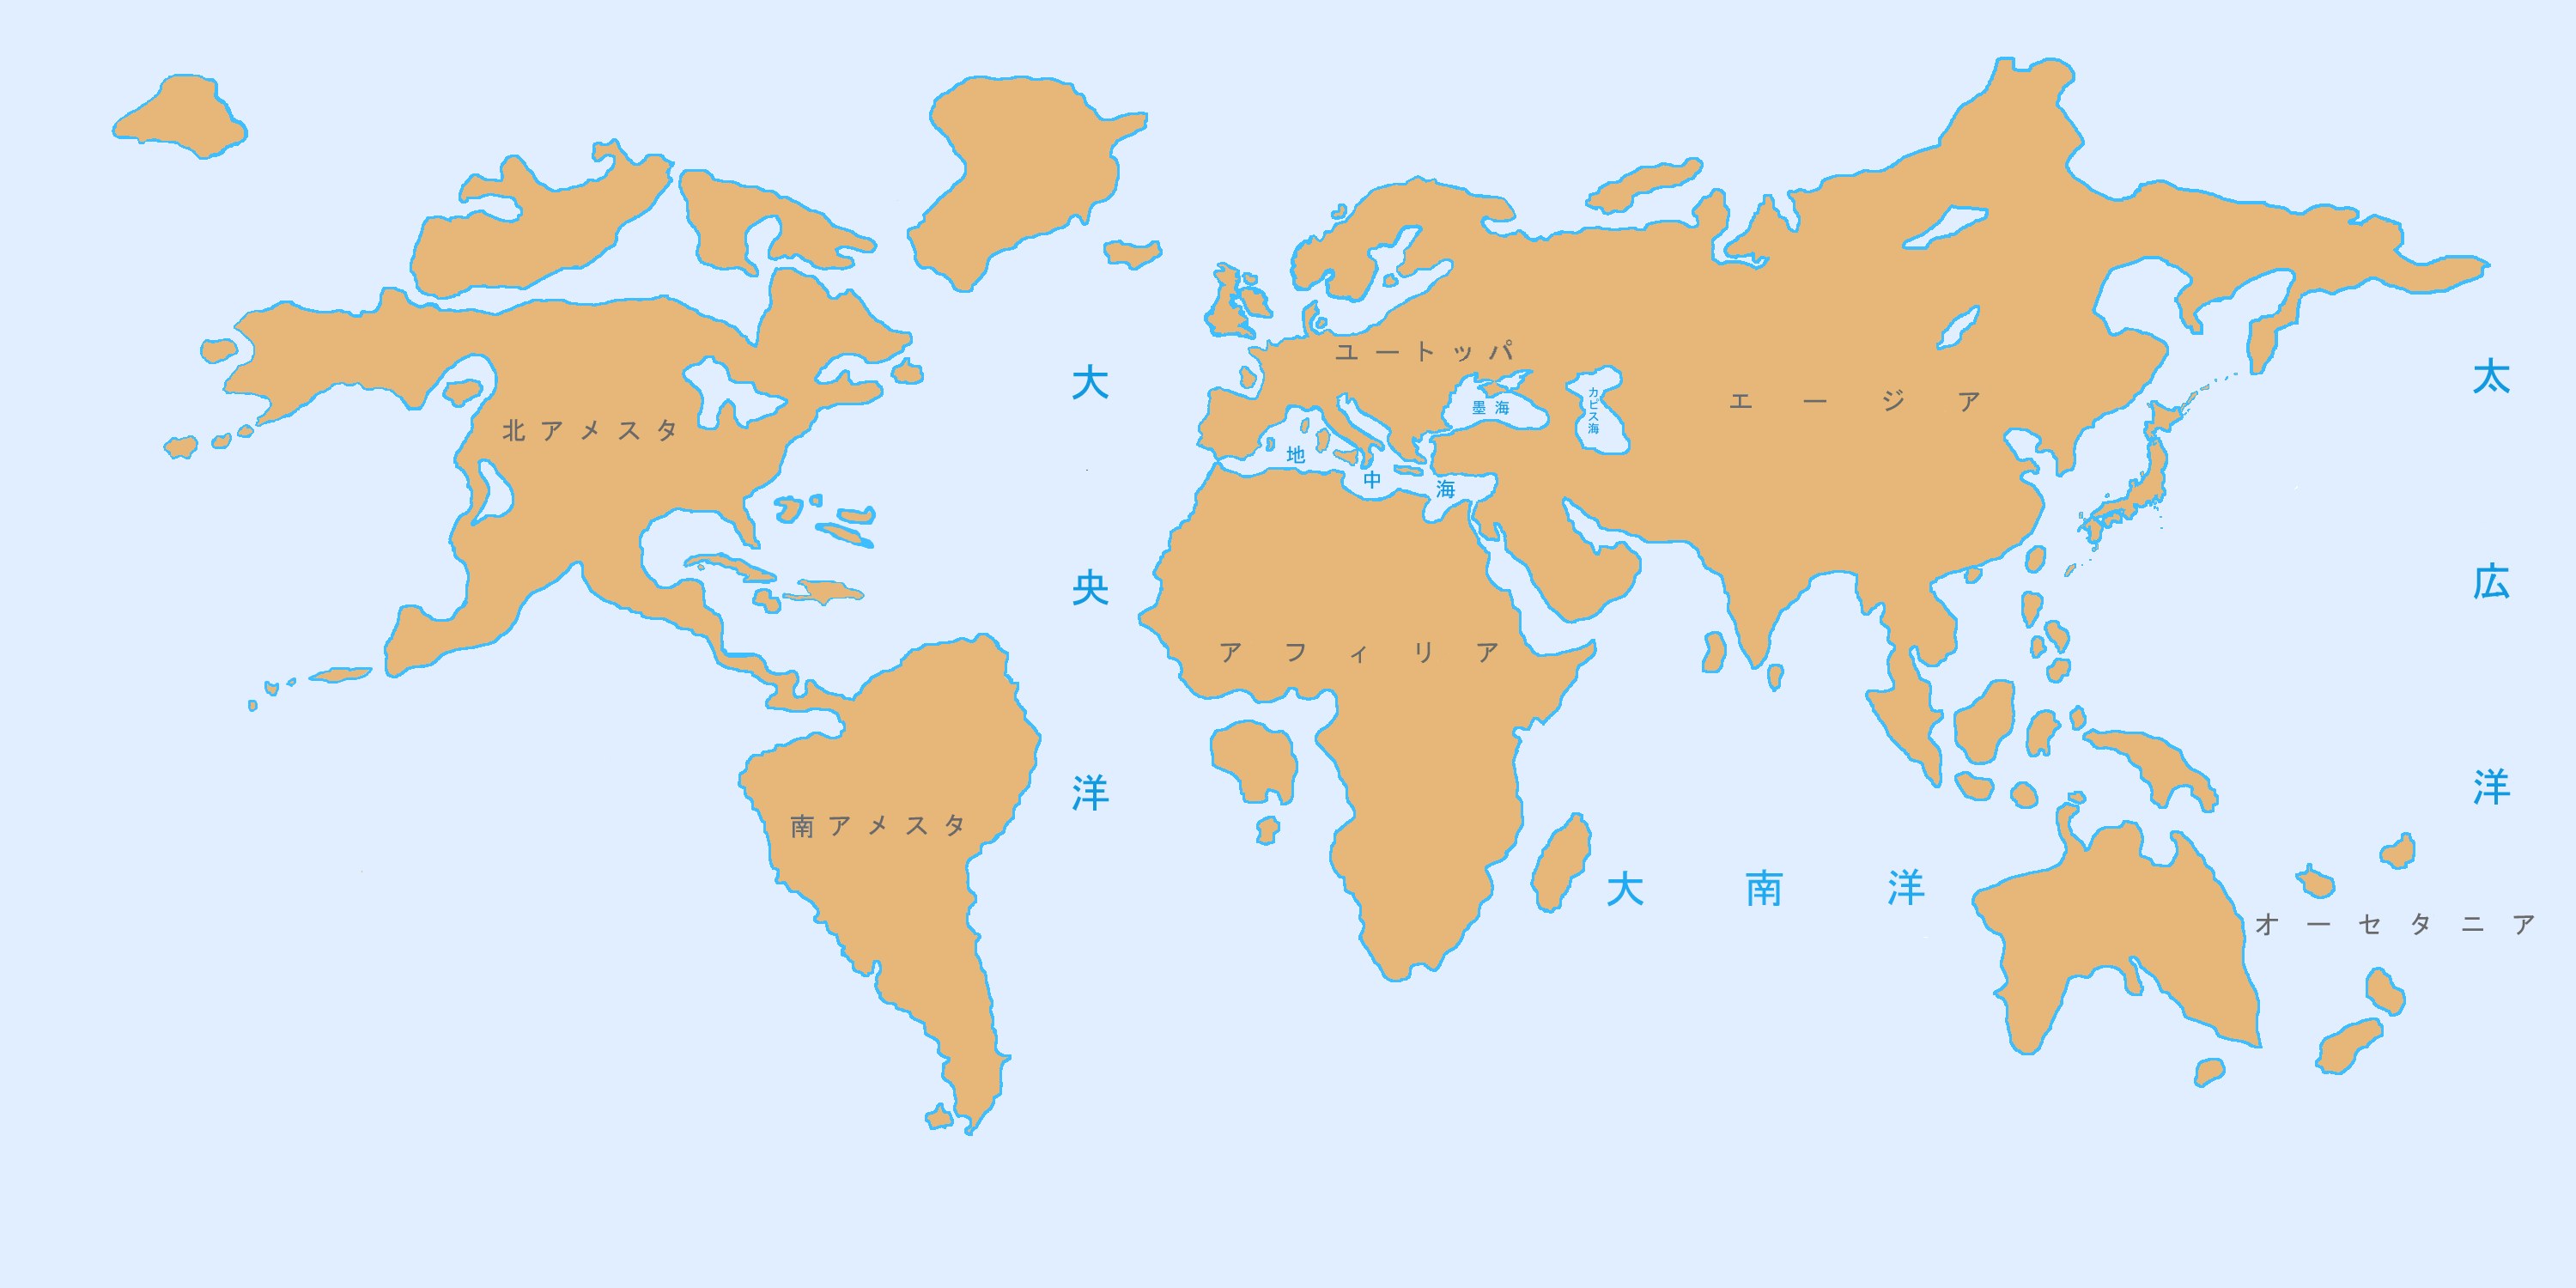 ベースとなる世界地図を添付いたしました。 本地図をベースとして申